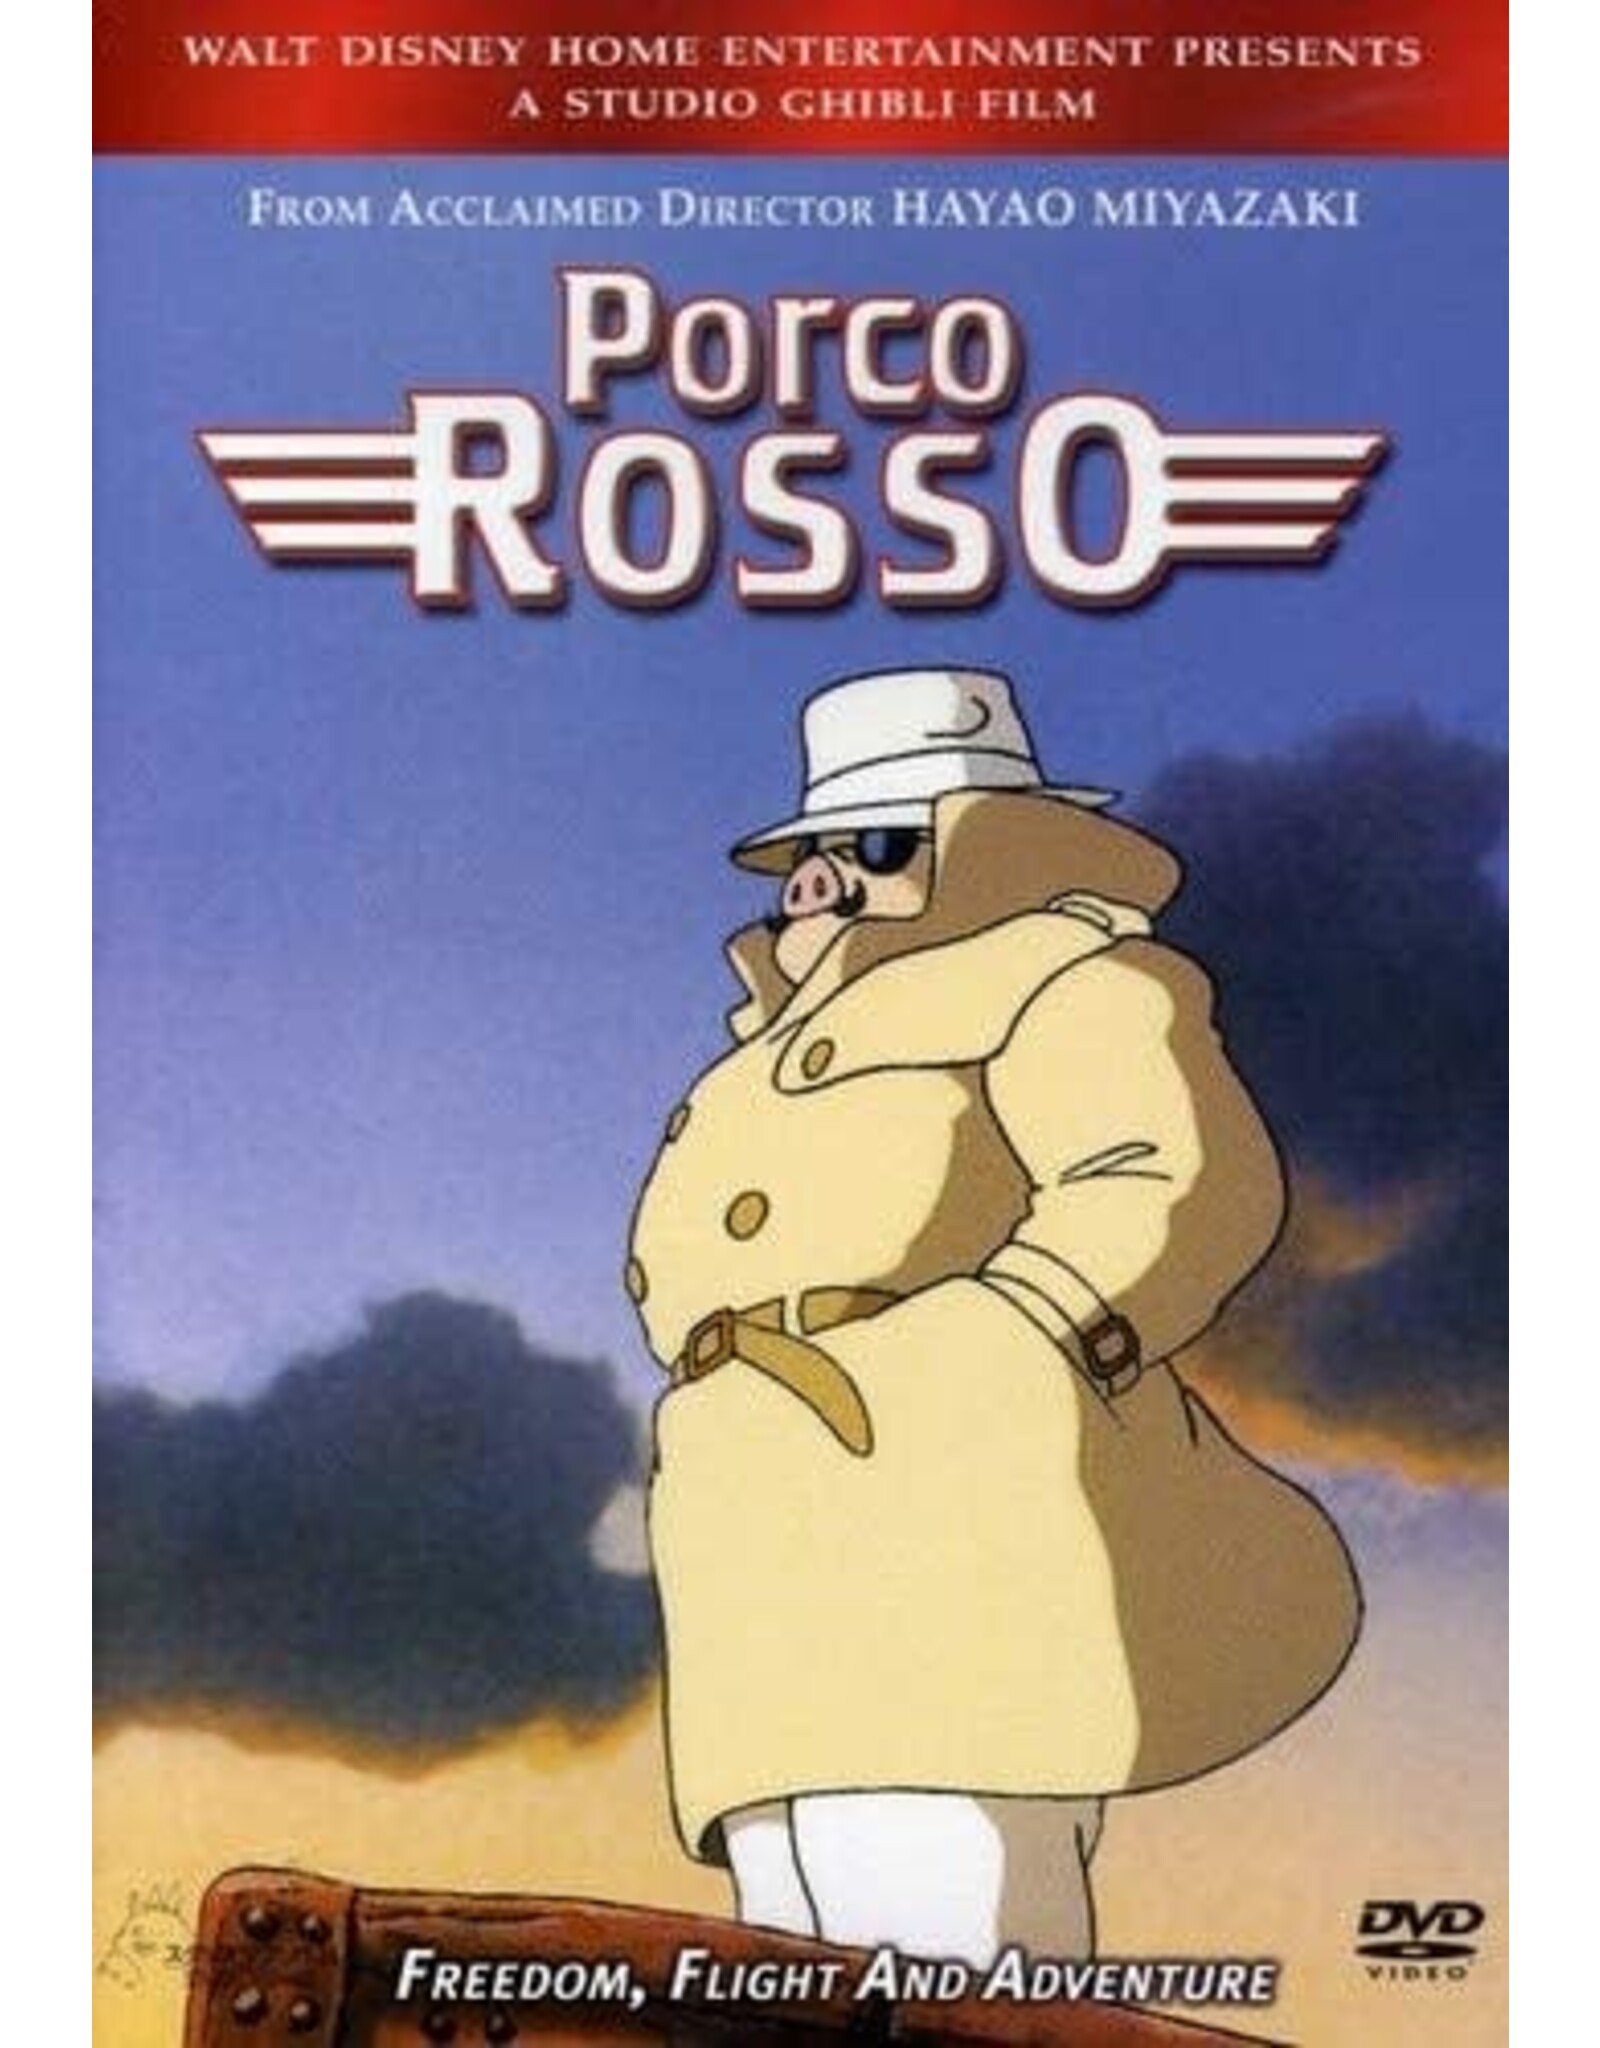 Anime & Animation Porco Rosso